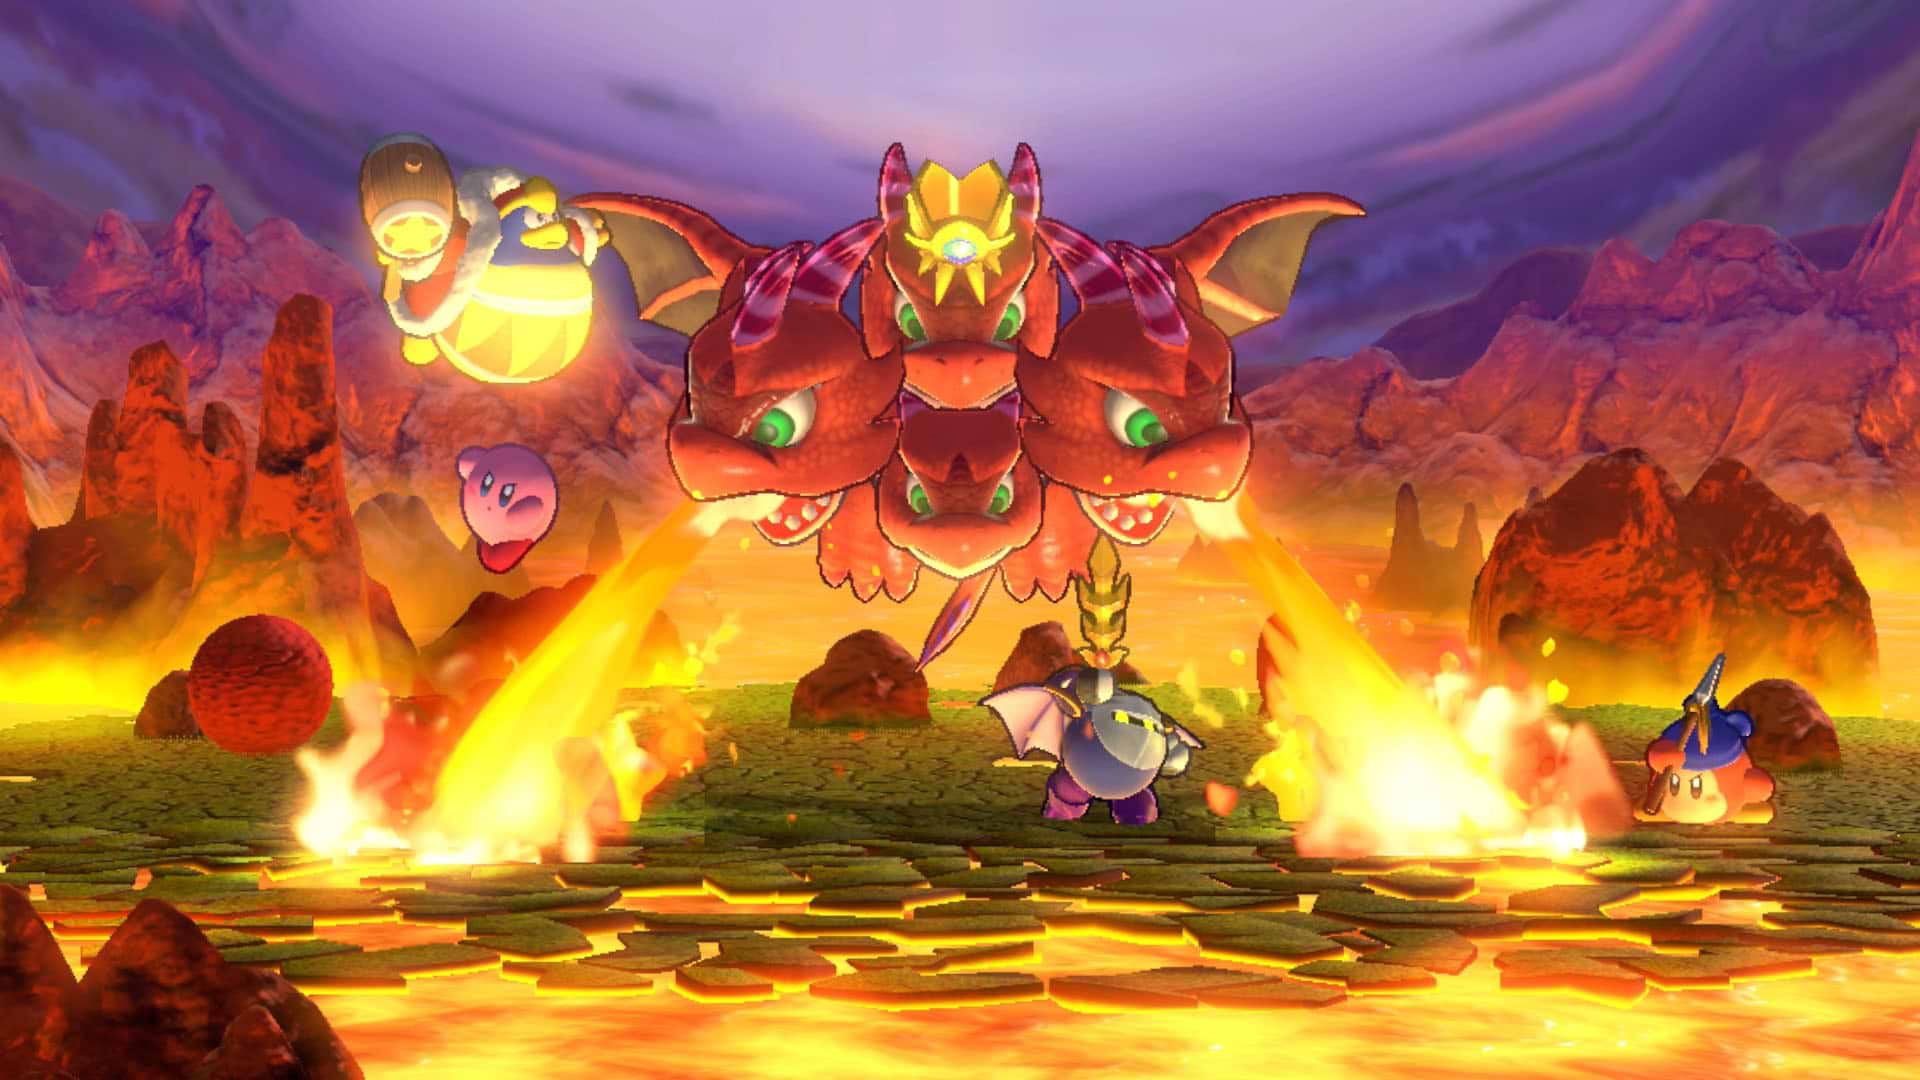 משחק Kirby Return to Dream Land Deluxe לקונסולת Nintendo Switch